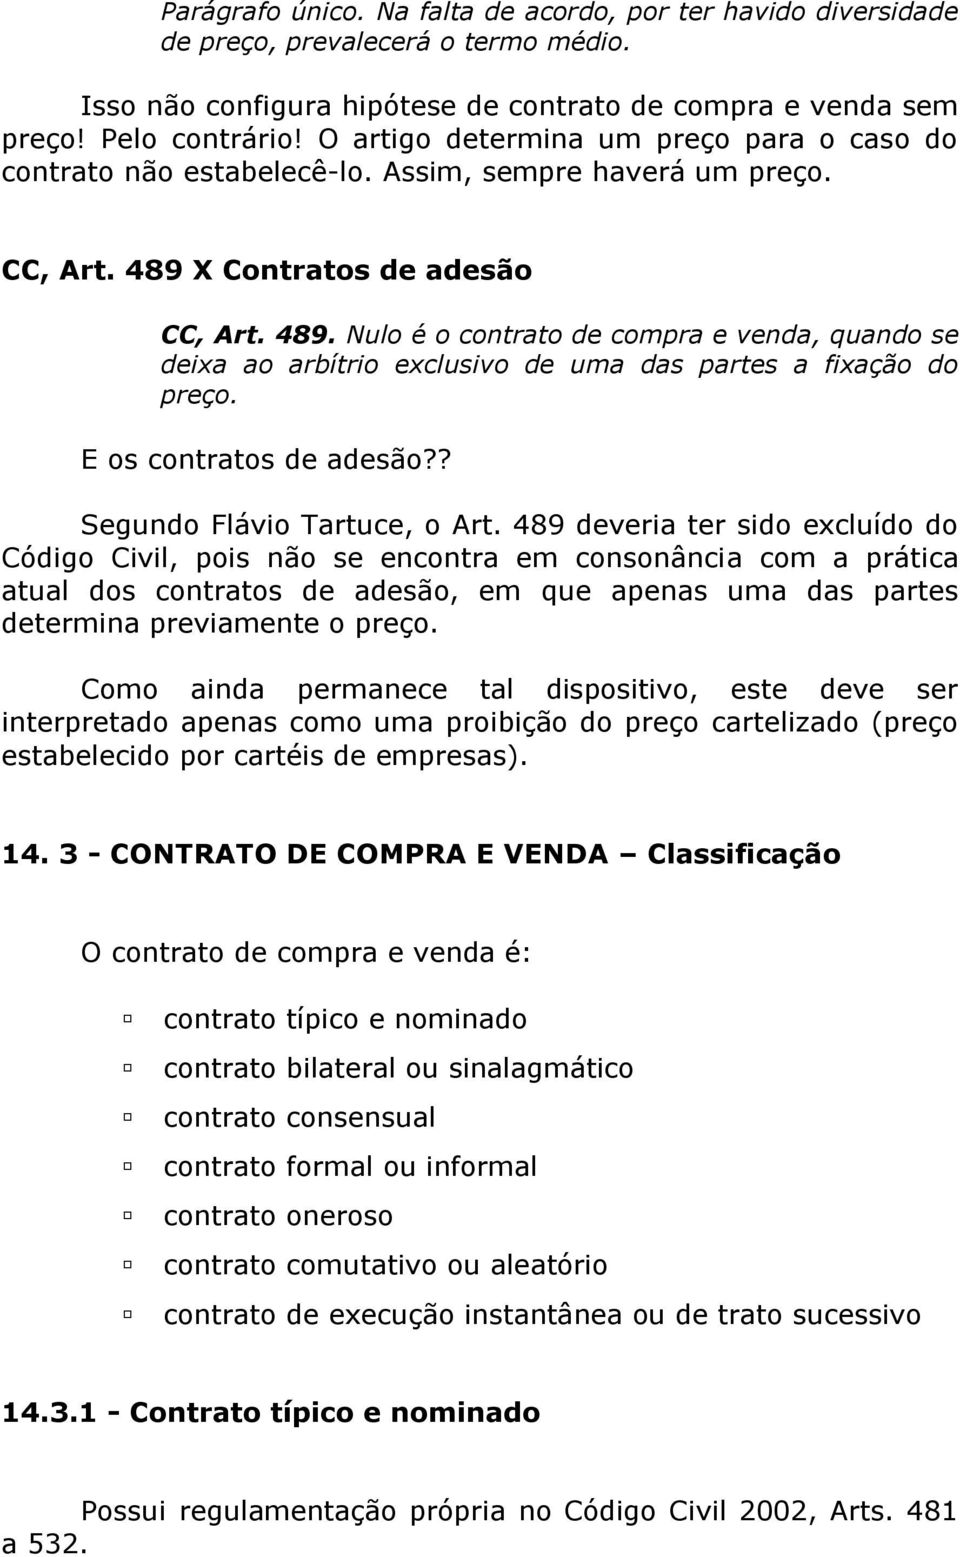 X Contratos de adesão CC, Art. 489. Nulo é o contrato de compra e venda, quando se deixa ao arbítrio exclusivo de uma das partes a fixação do preço. E os contratos de adesão?